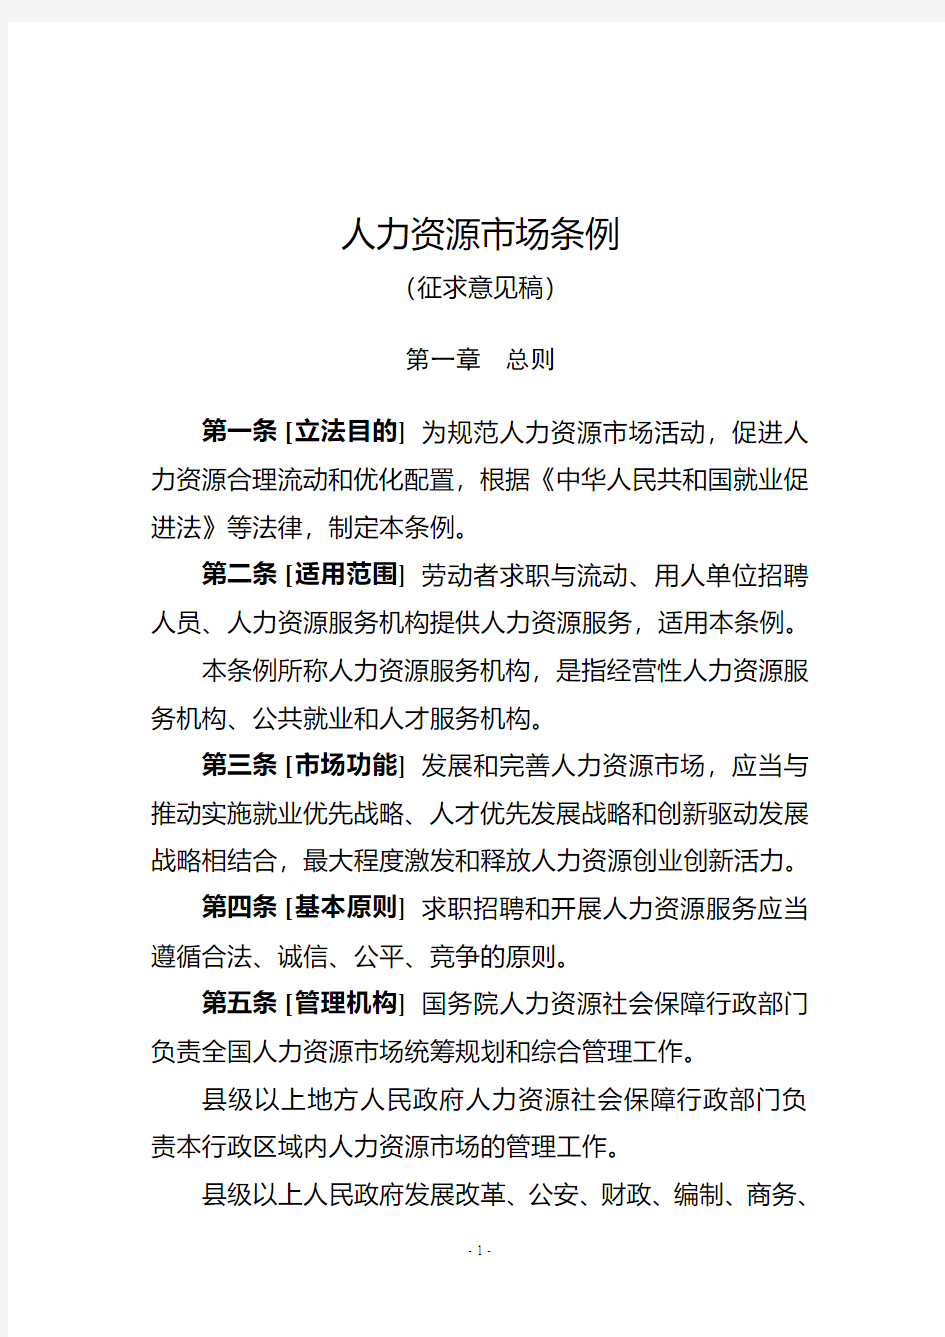 人力资源场条例-中华人民共和国人力资源和社会保障部